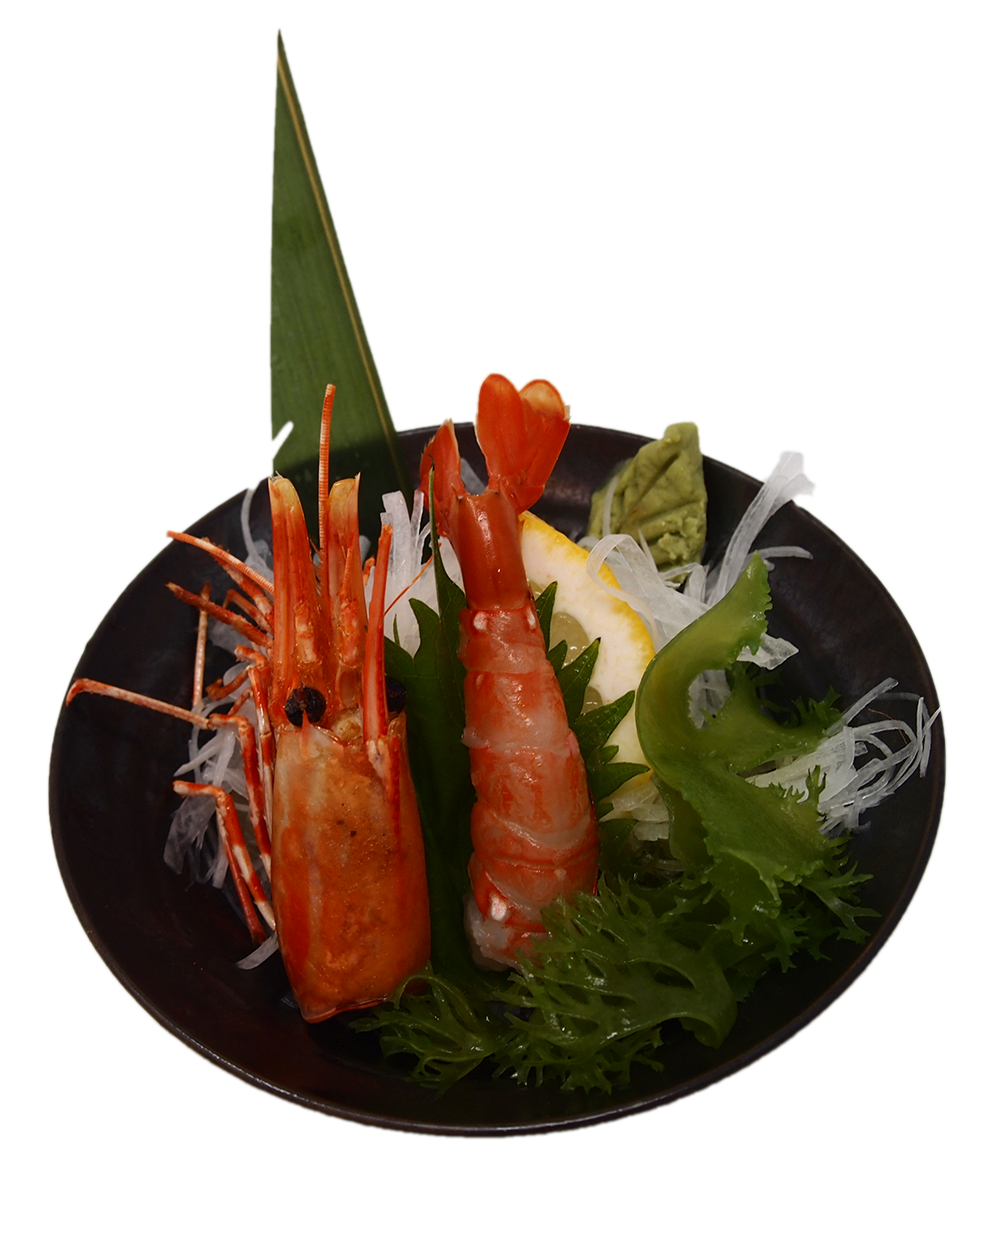 Botan Ebi (Botan Shrimp) Sashimi